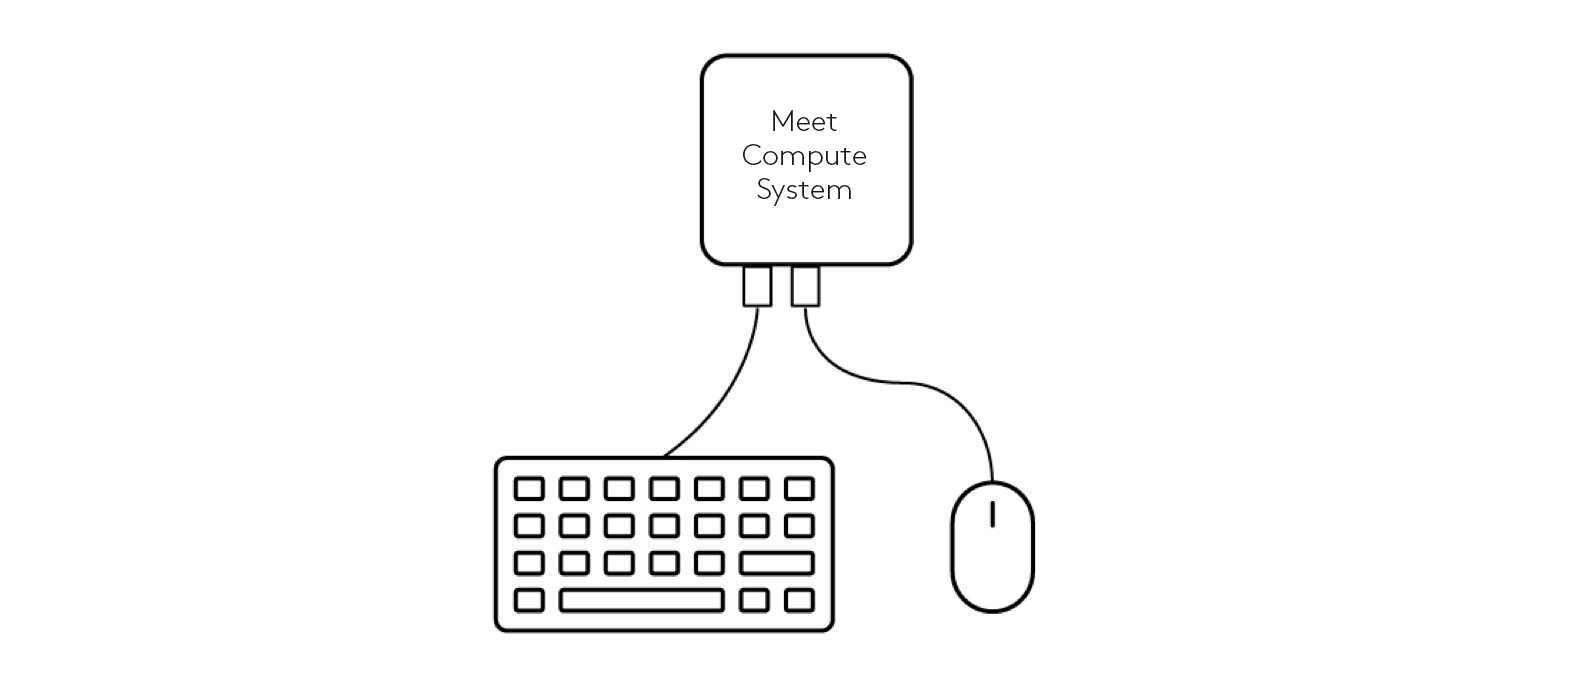 为会议计算系统连接键盘和鼠标的示意图